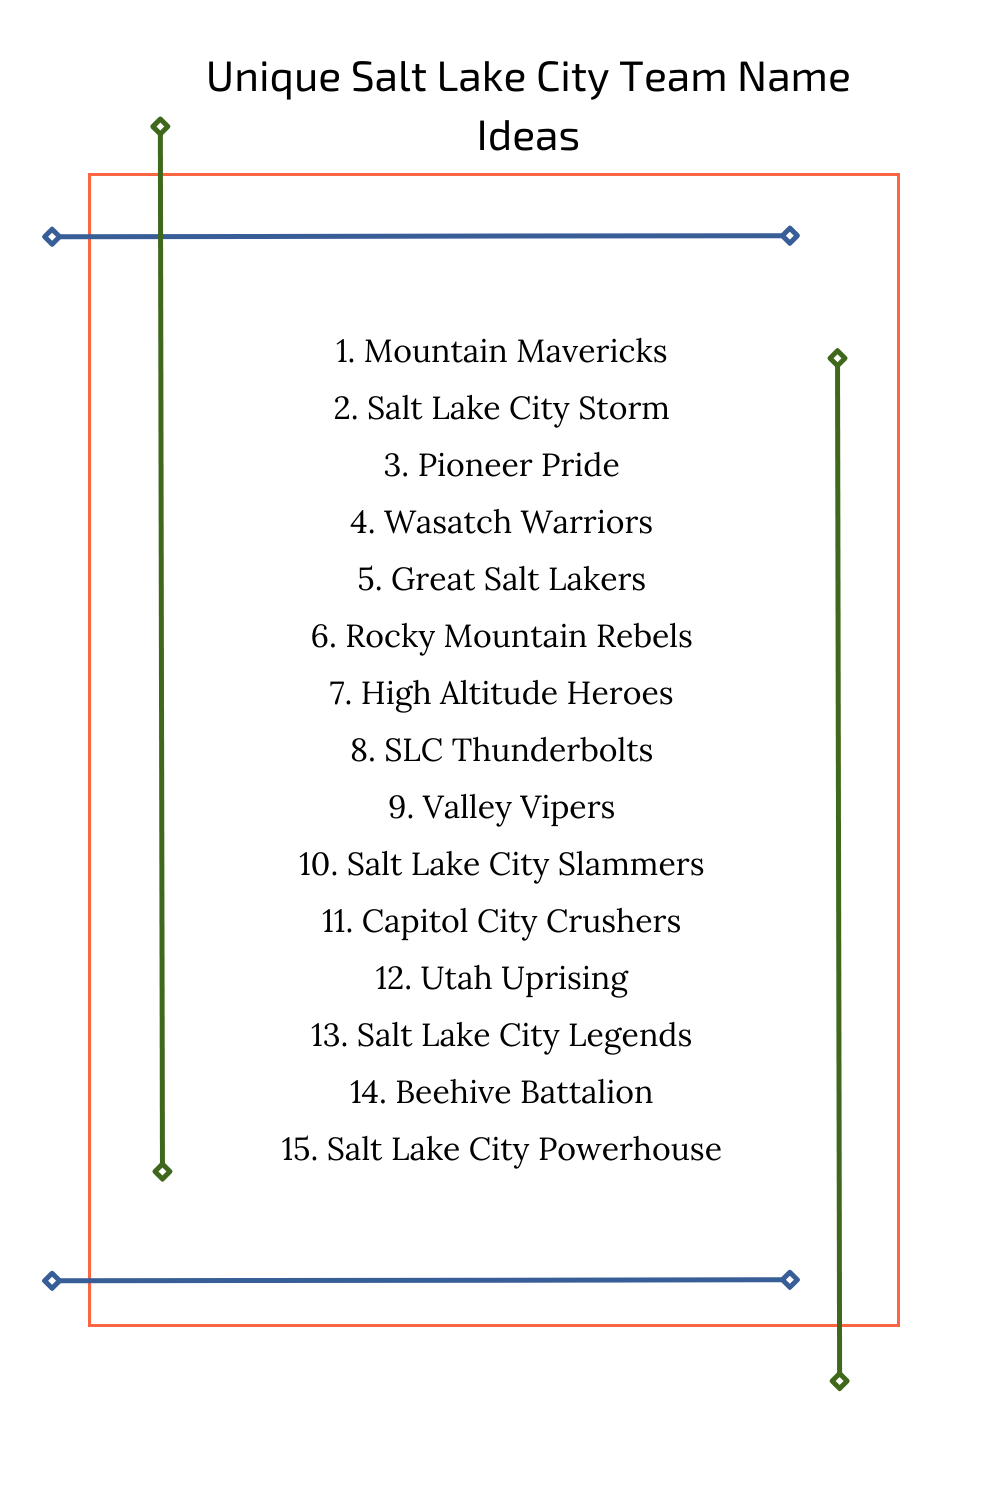 Unique Salt Lake City Team Name Ideas